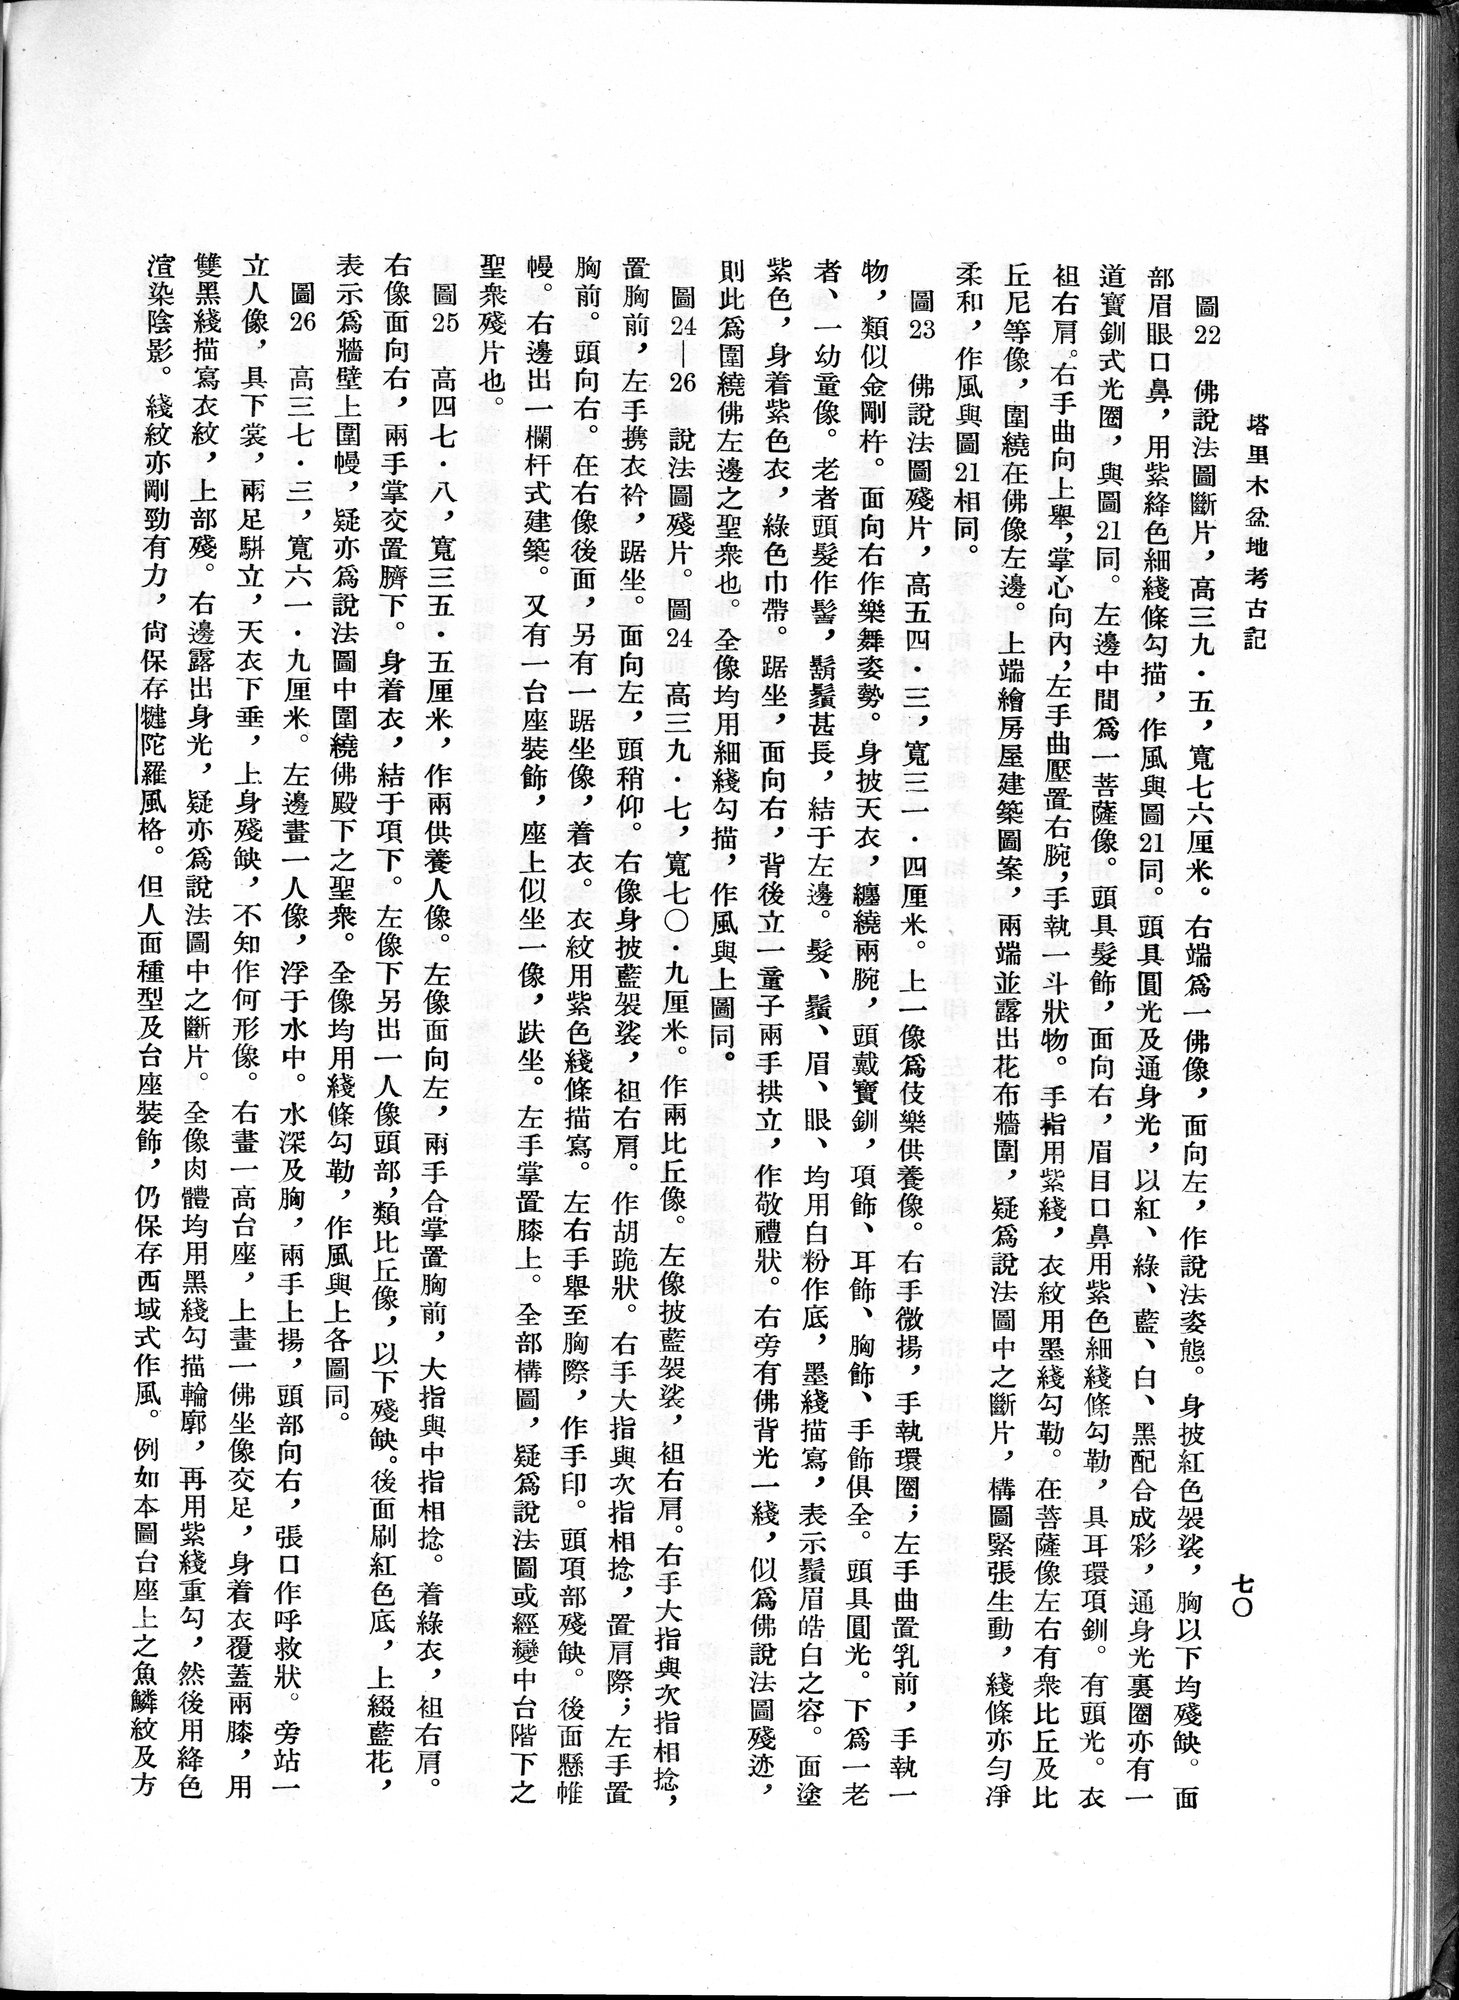 塔里木盆地考古記 : vol.1 / Page 134 (Grayscale High Resolution Image)